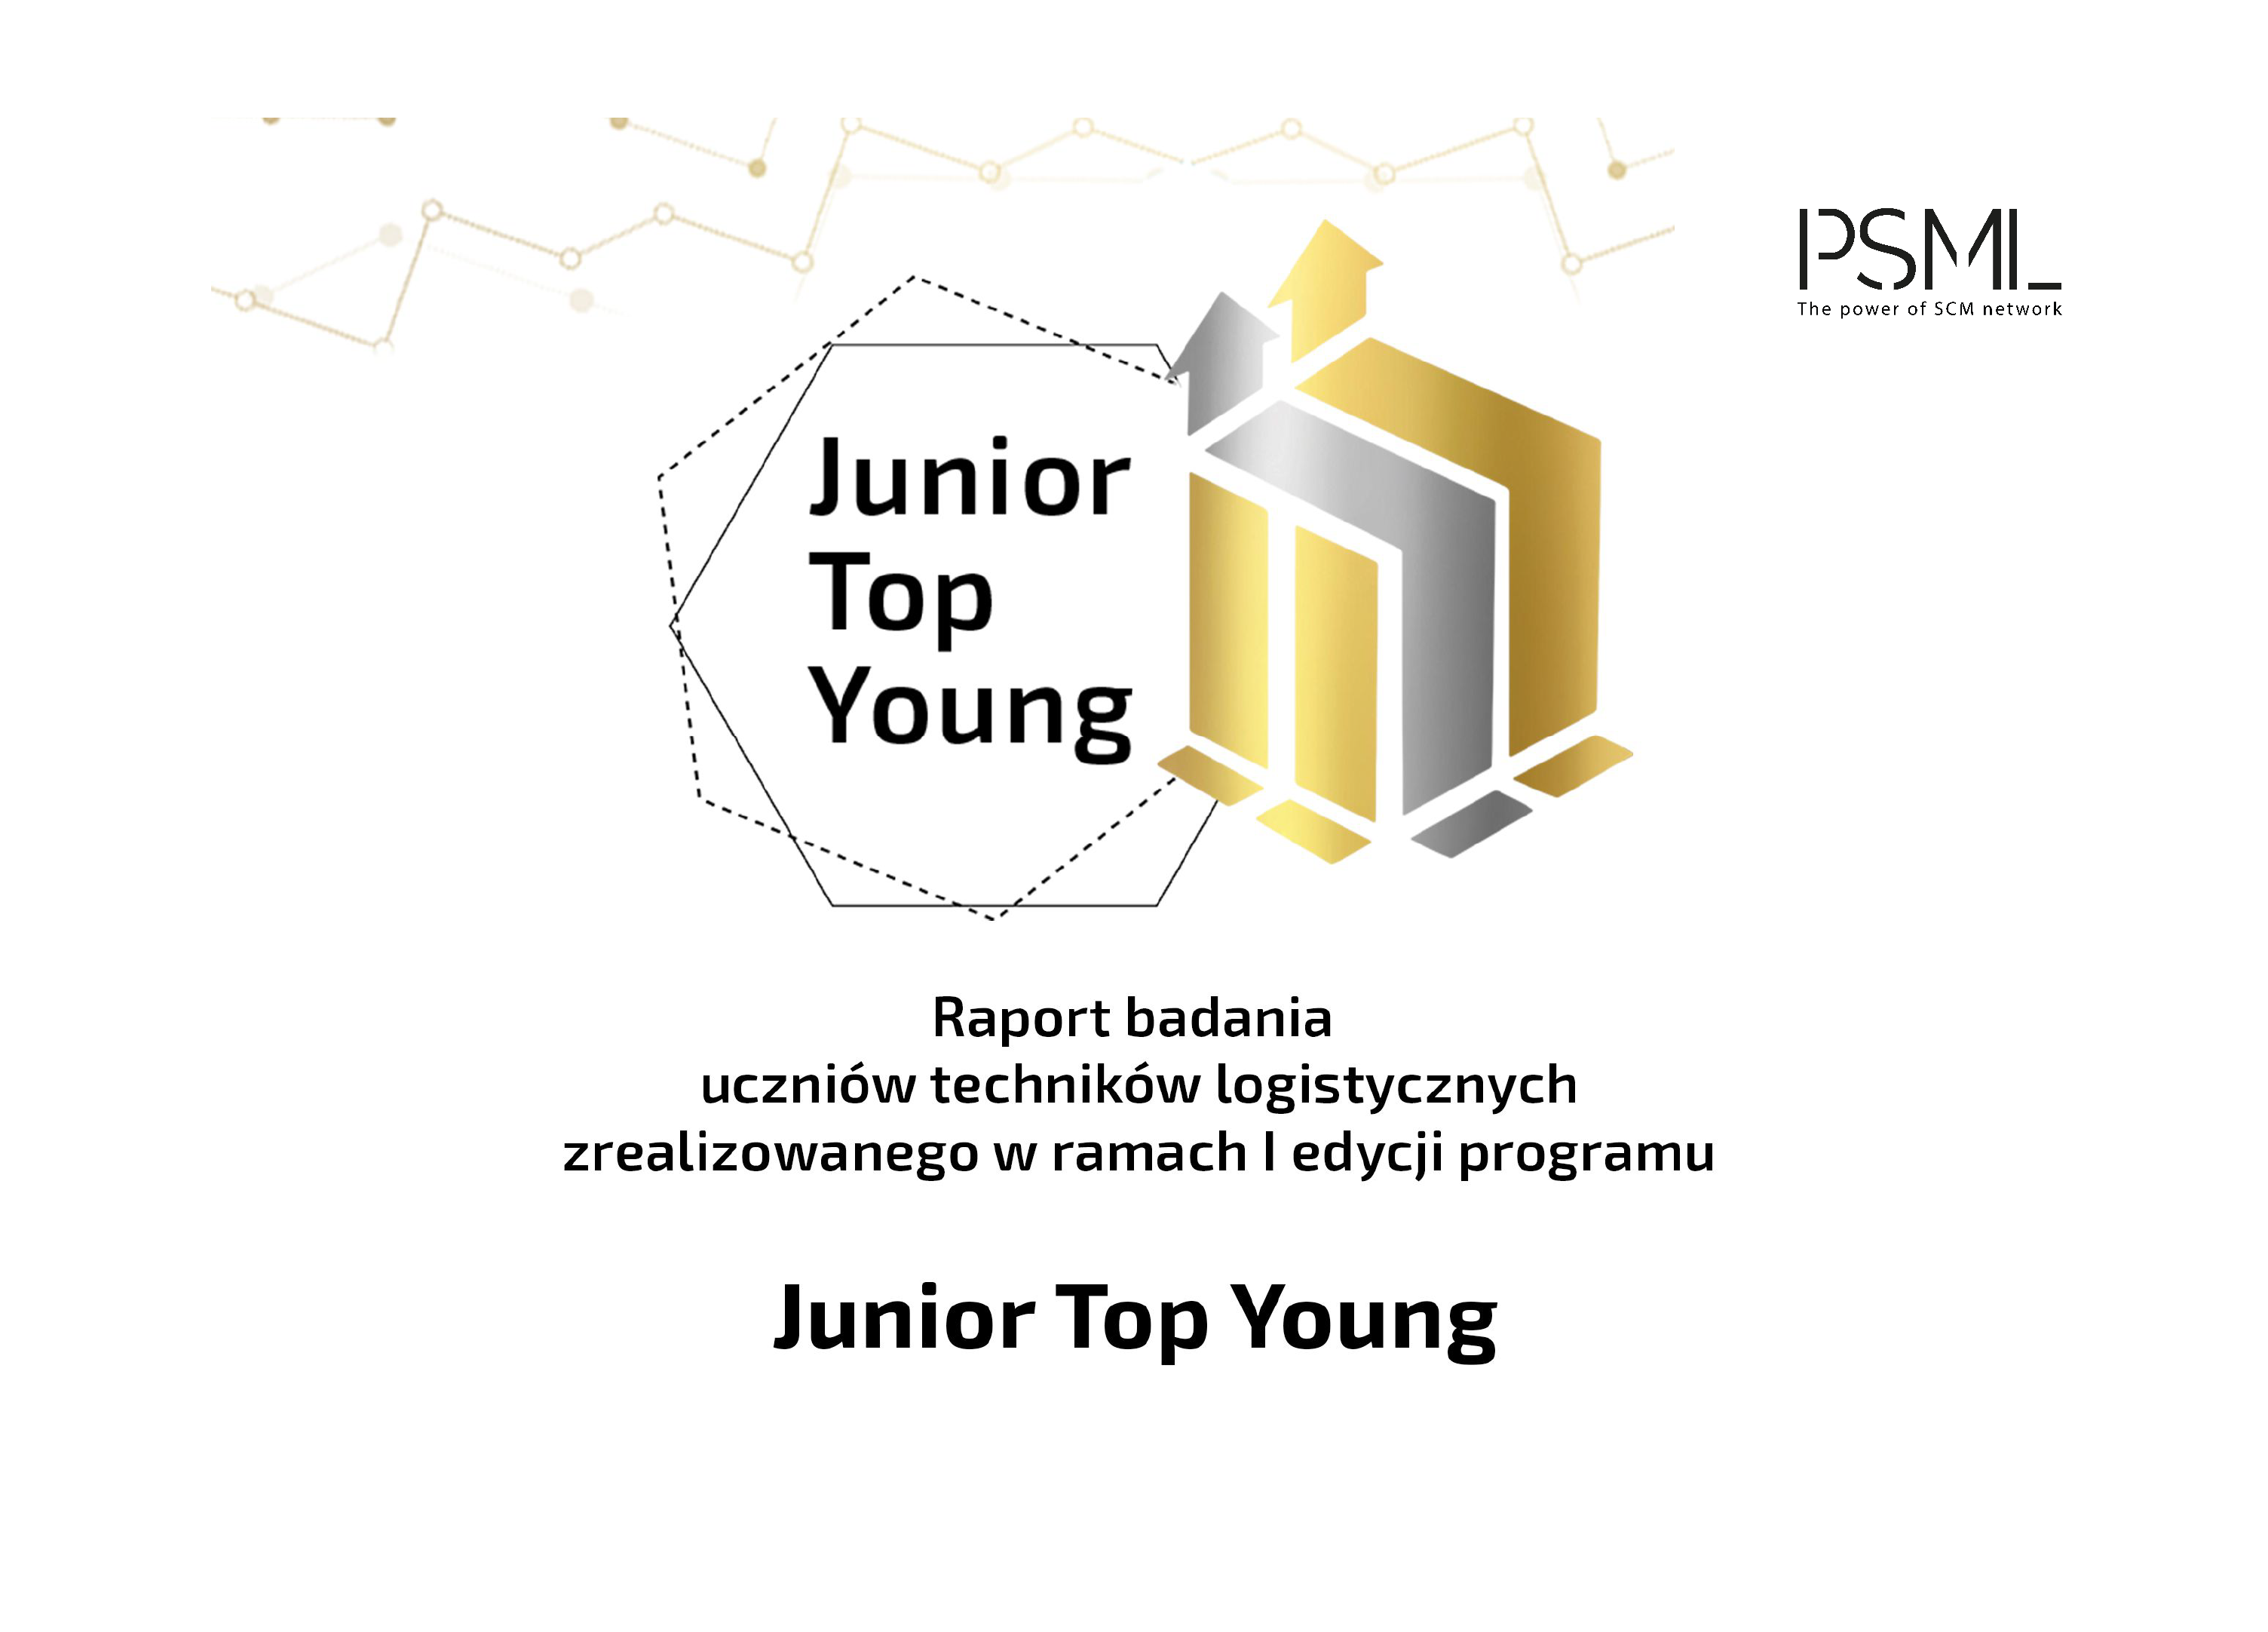 Raport badania Junior Top Young 100 – Logistyka (nie) przez przypadek